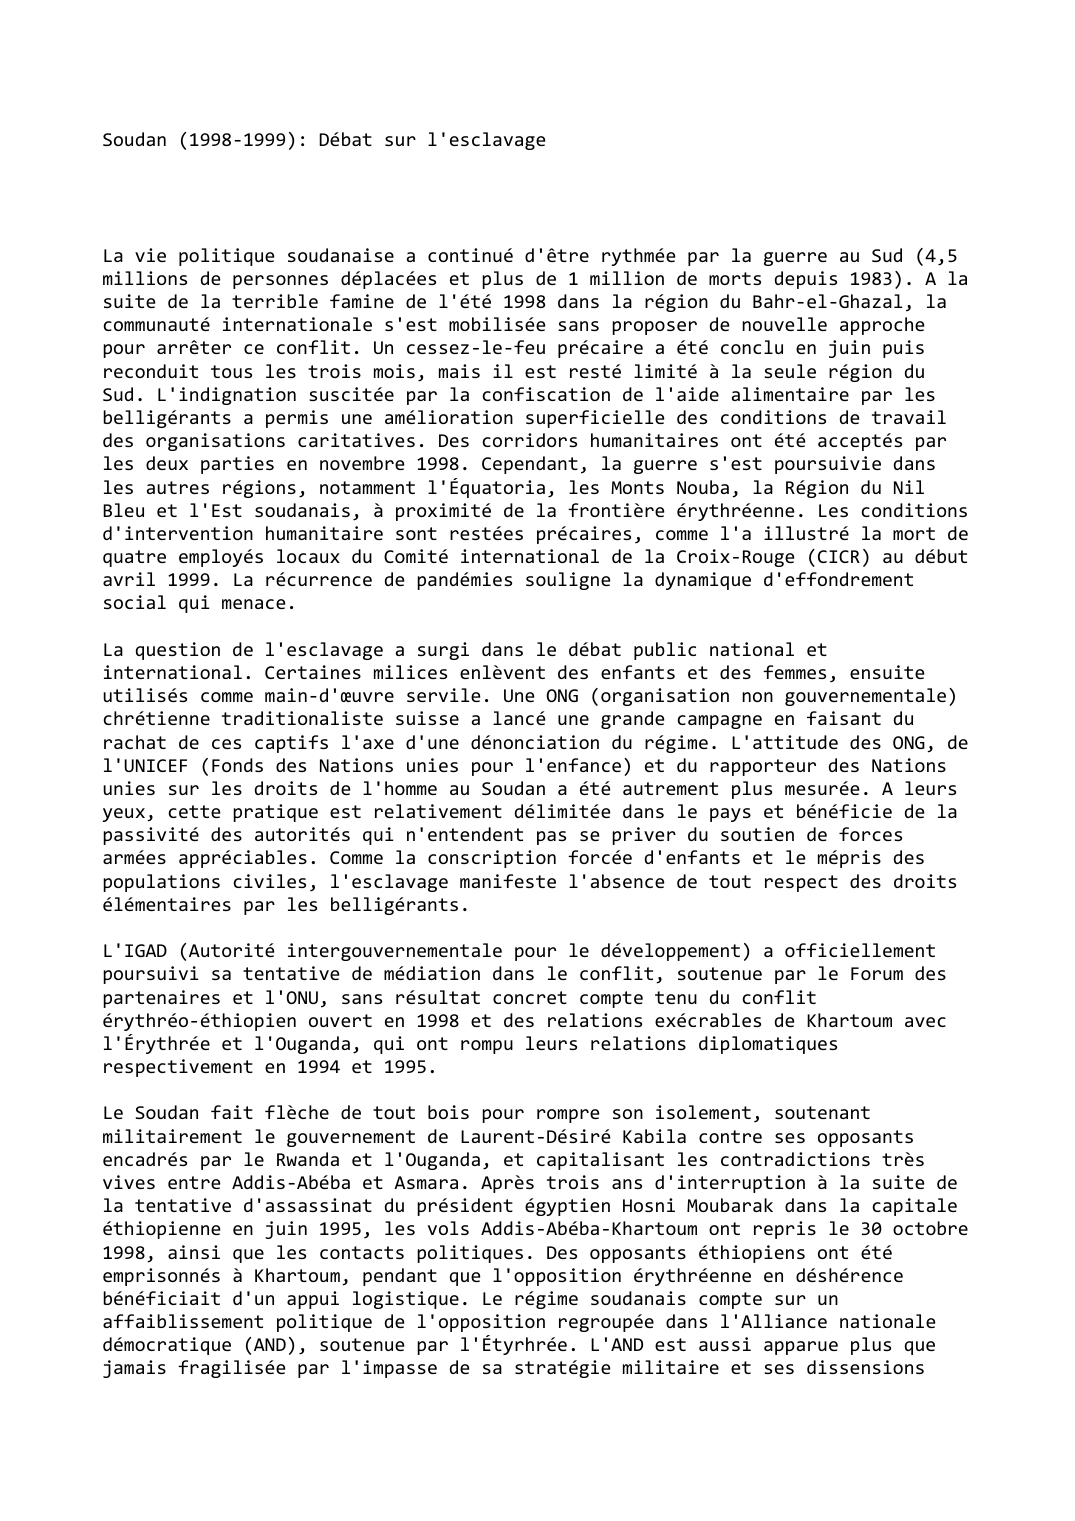 Prévisualisation du document Soudan (1998-1999): Débat sur l'esclavage